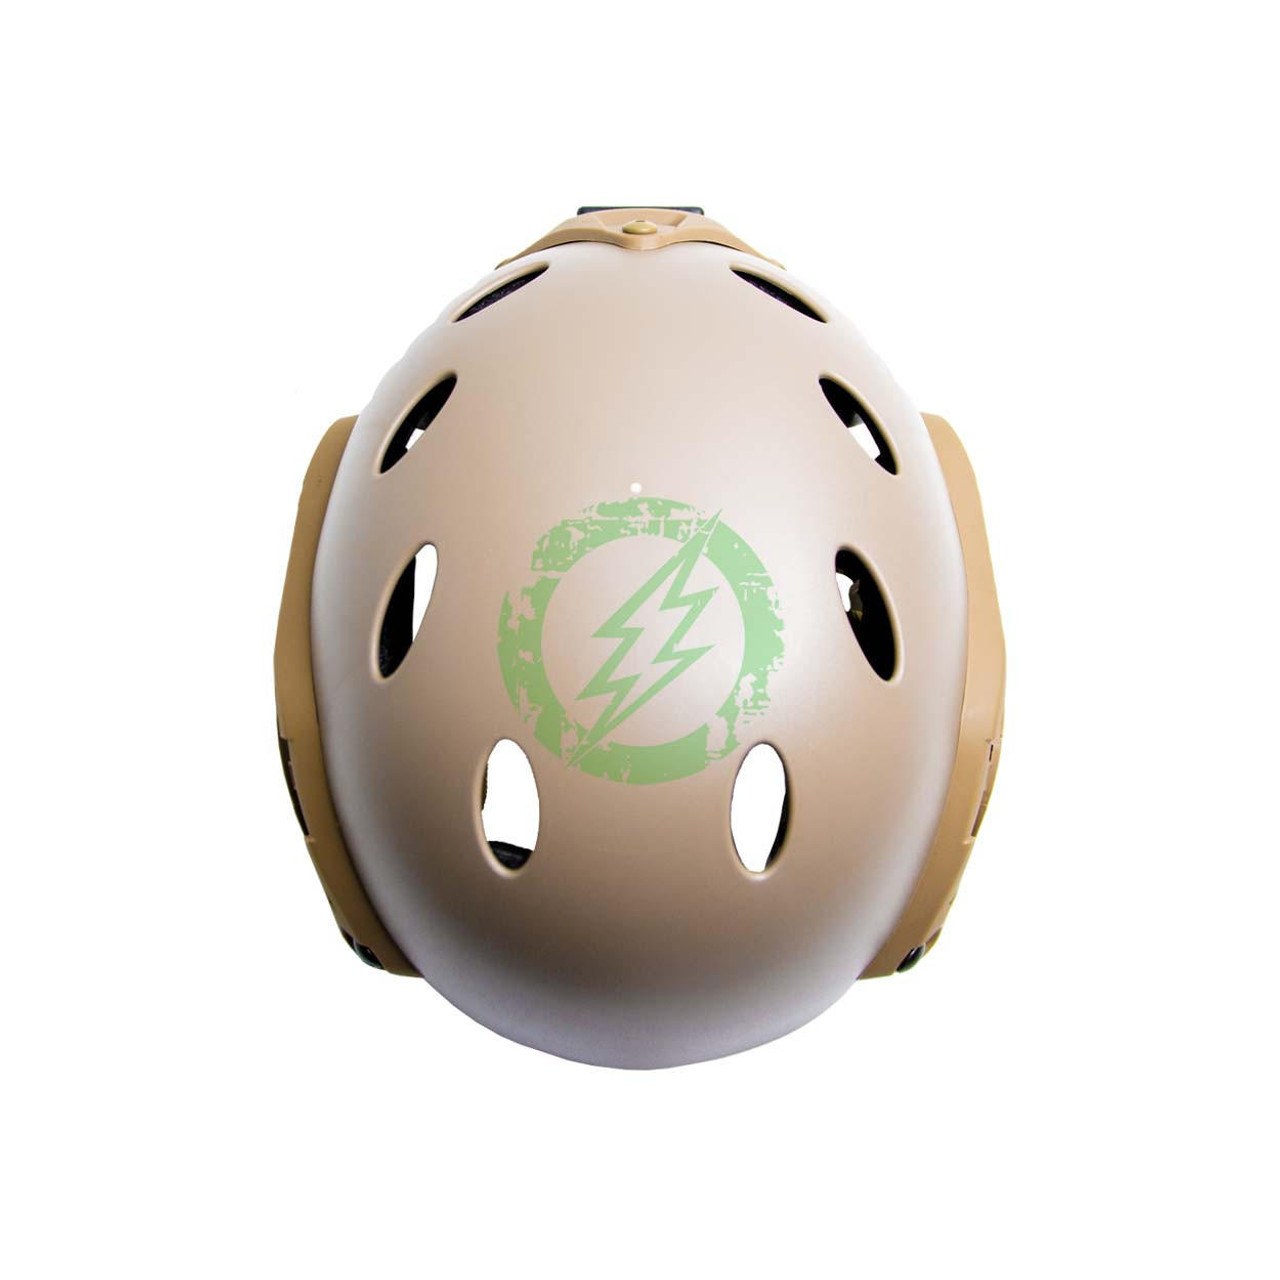  Lancer Tactical Helmet PJ Type 